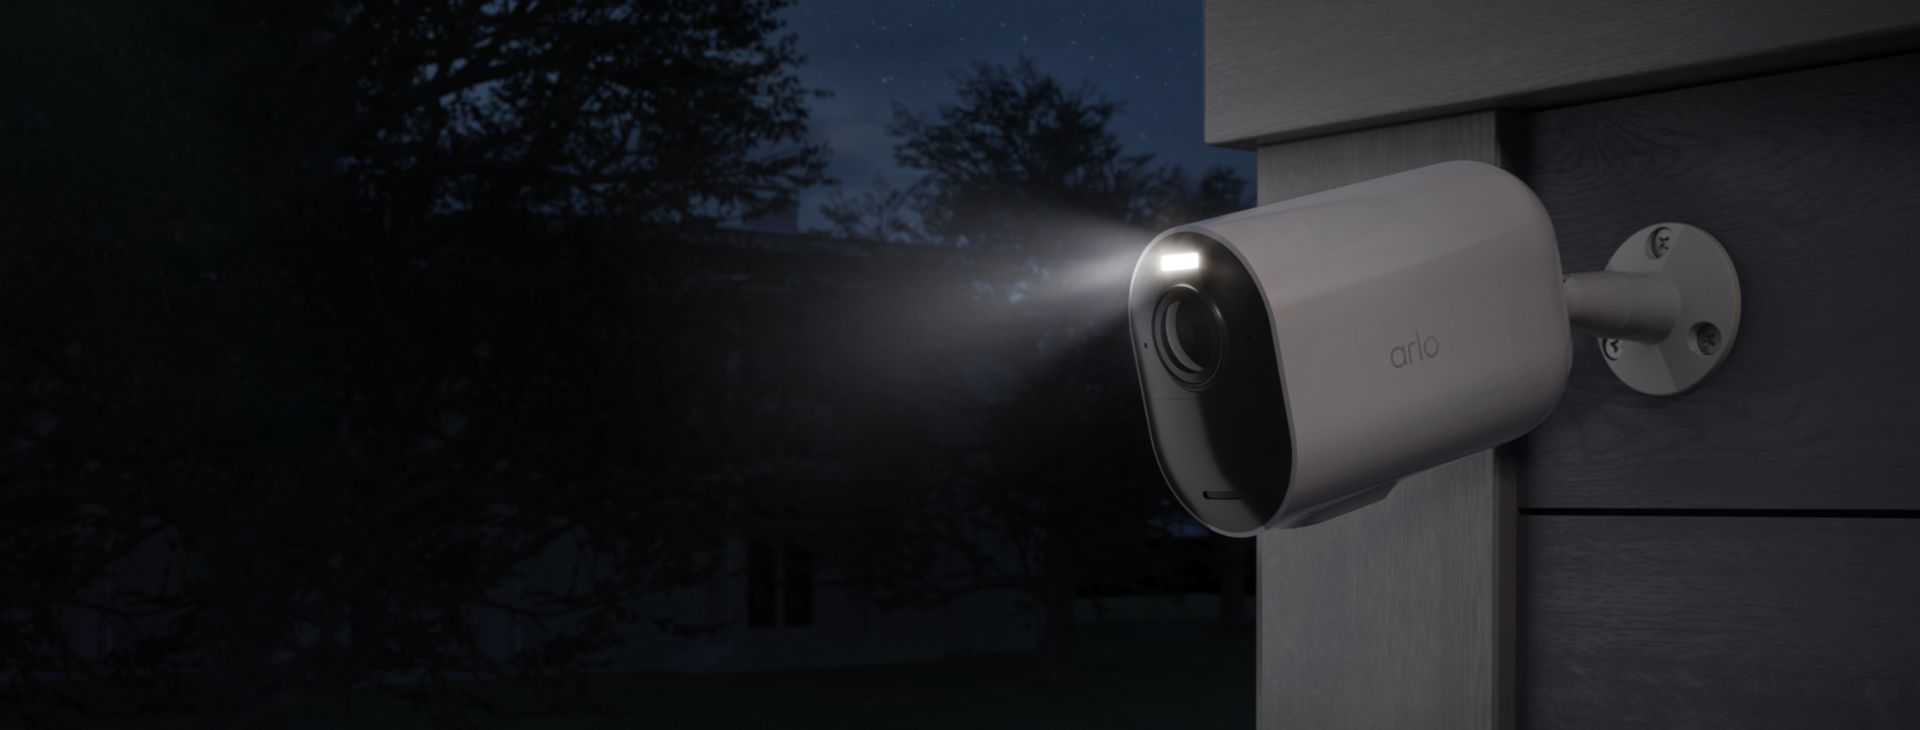 De Arlo Ultra 2 XL bewakingscamera geïnstalleerd tegen een muur 's nachts met de schijnwerper aan.